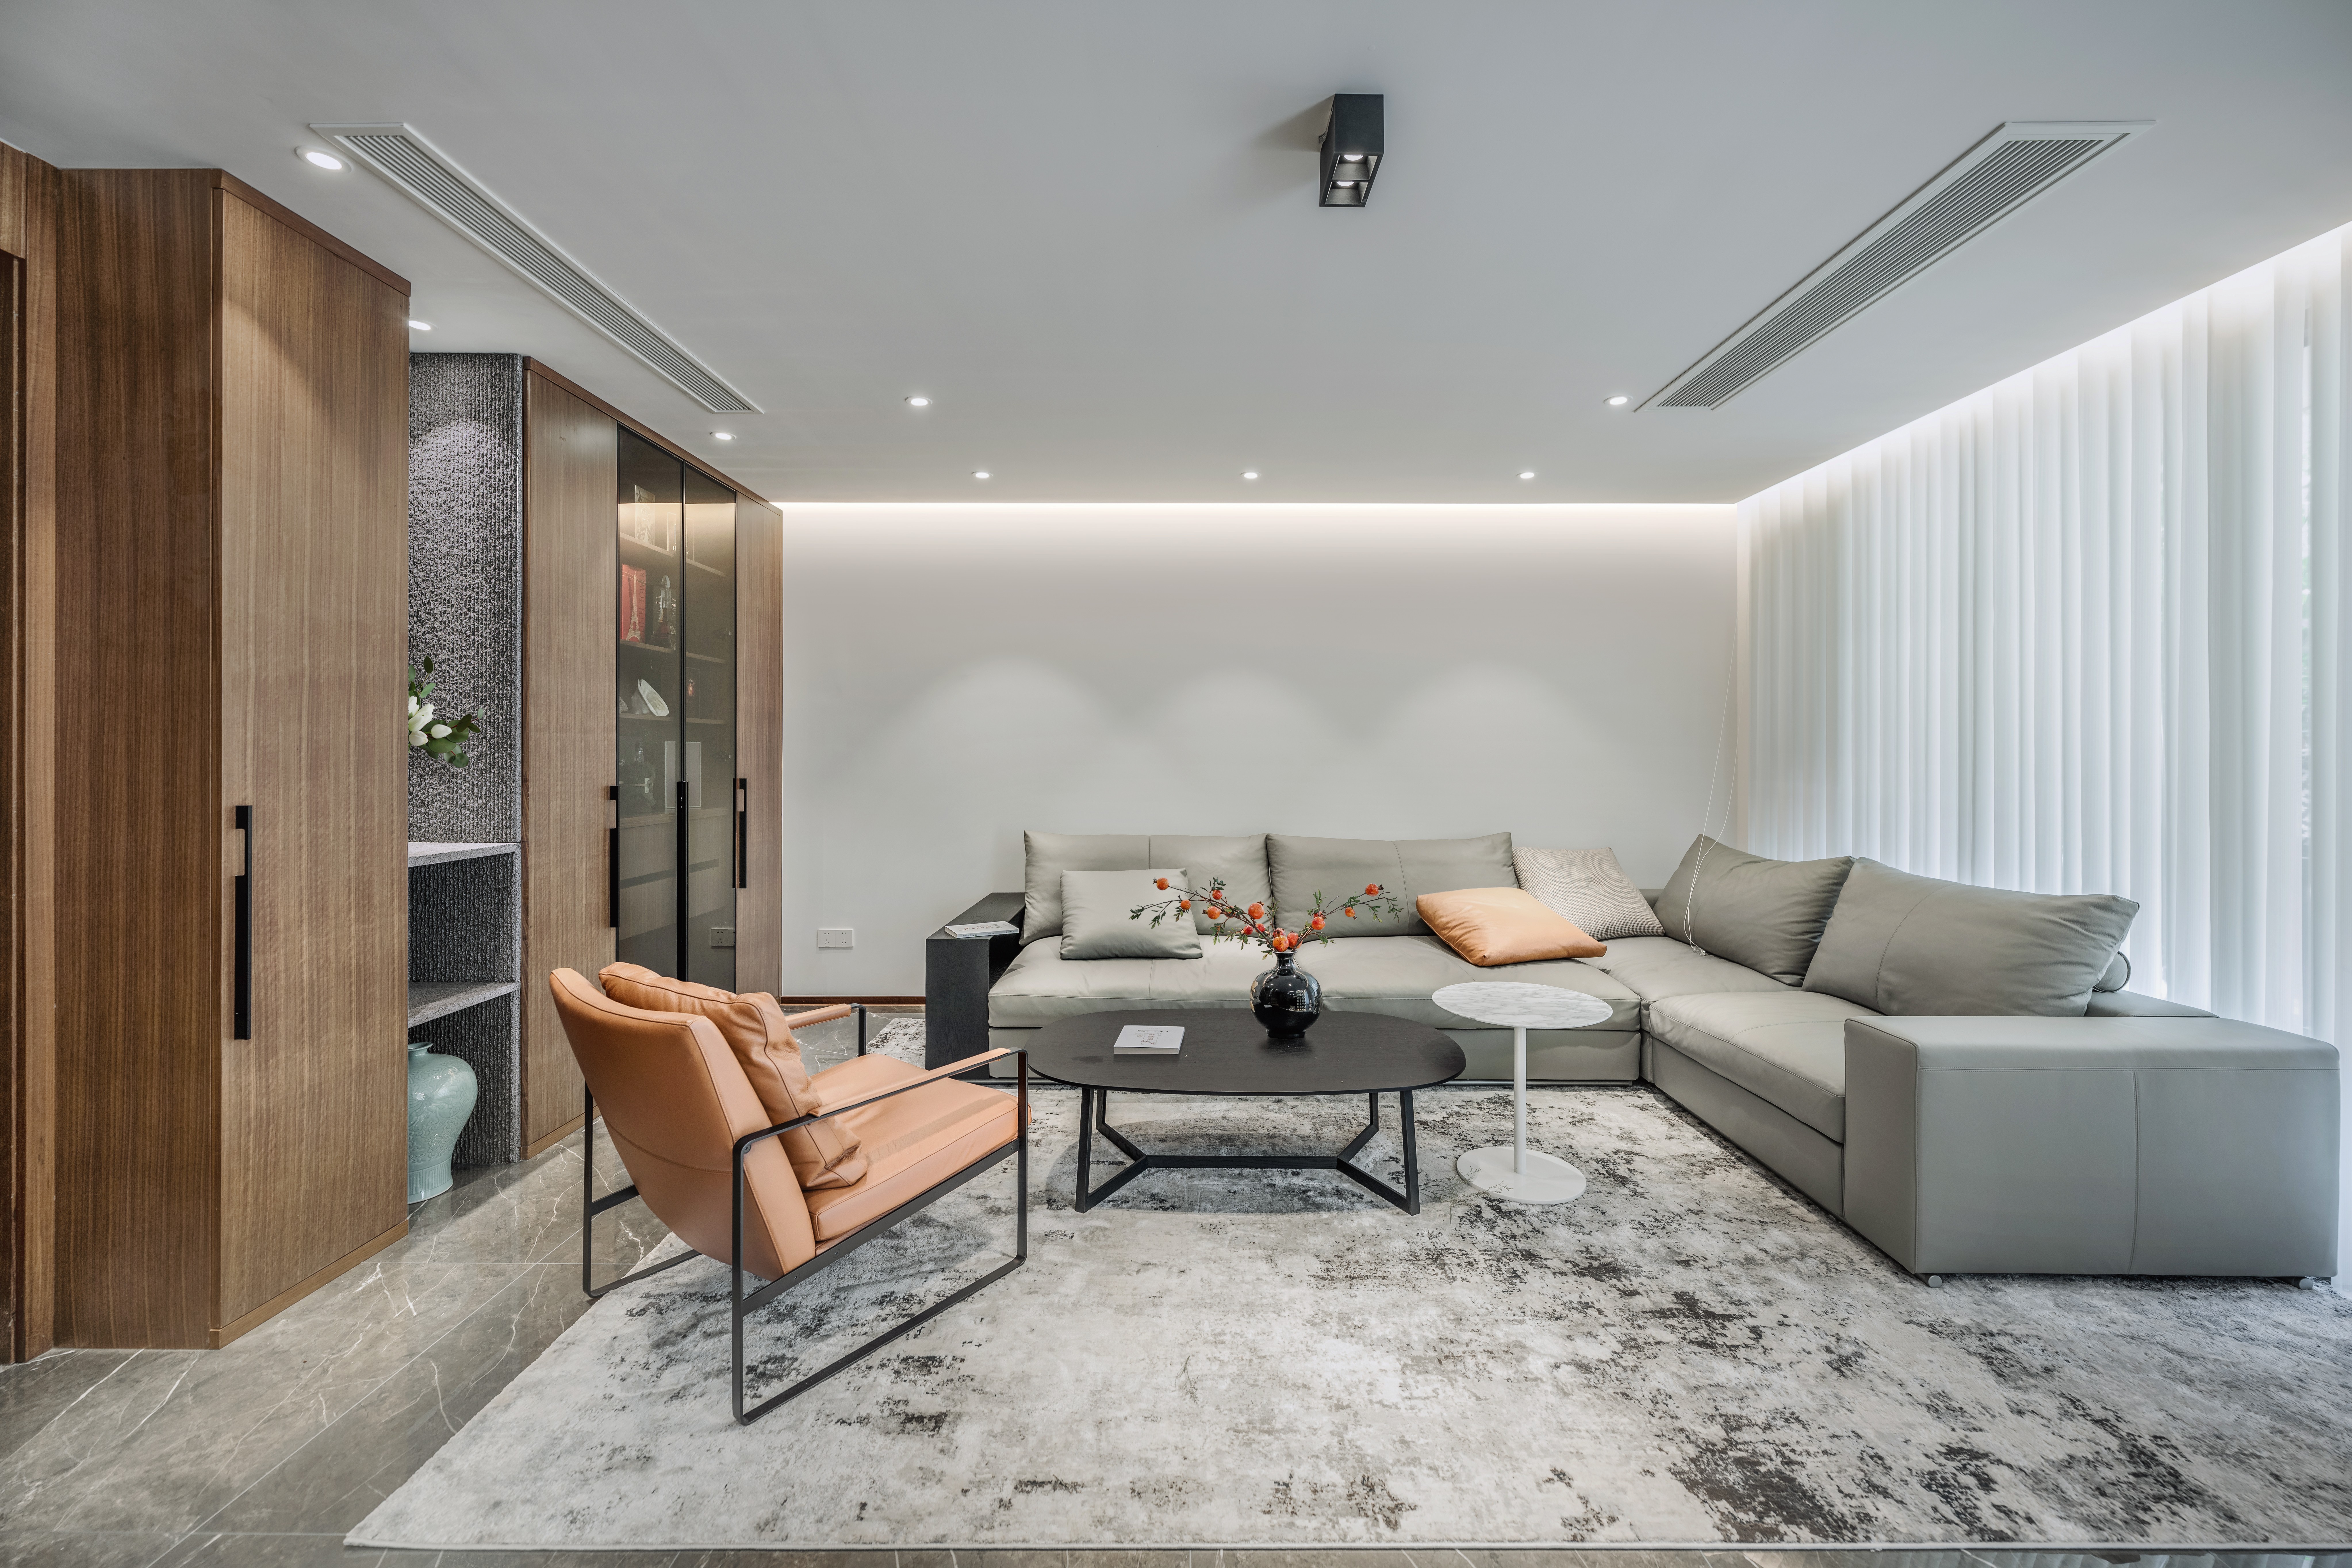 沙发区减少设计造型，利用顶部灯光勾勒空间结构，形成放松通透的视觉氛围。